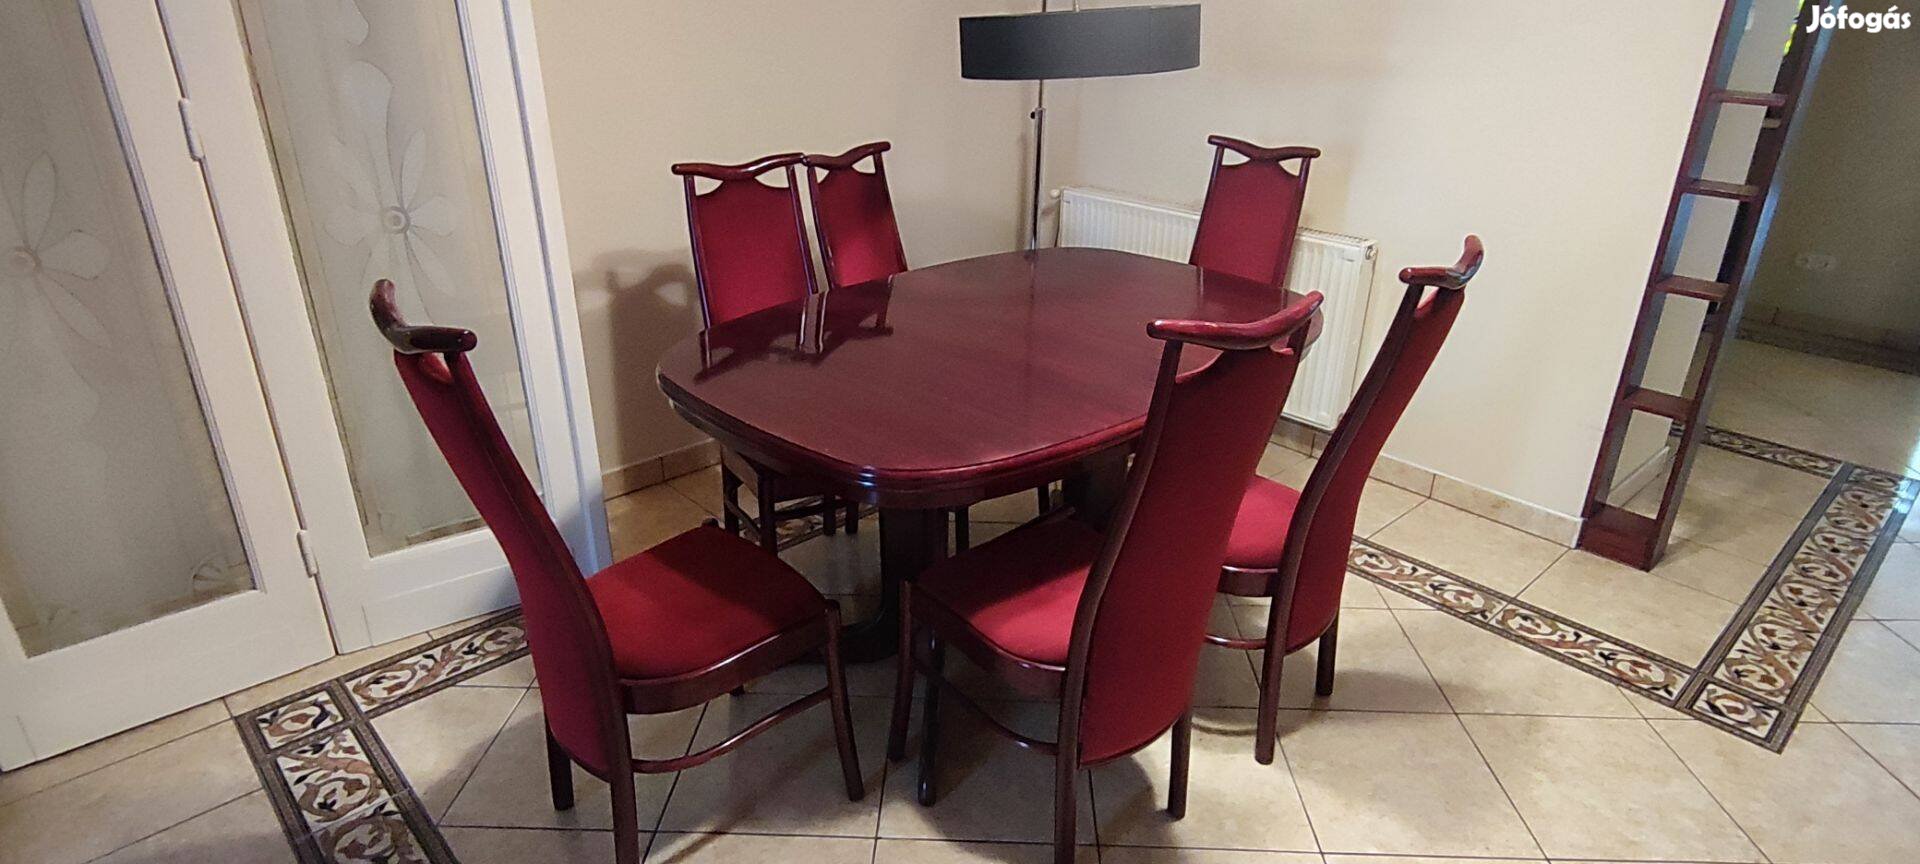 Étkező asztal, székekkel